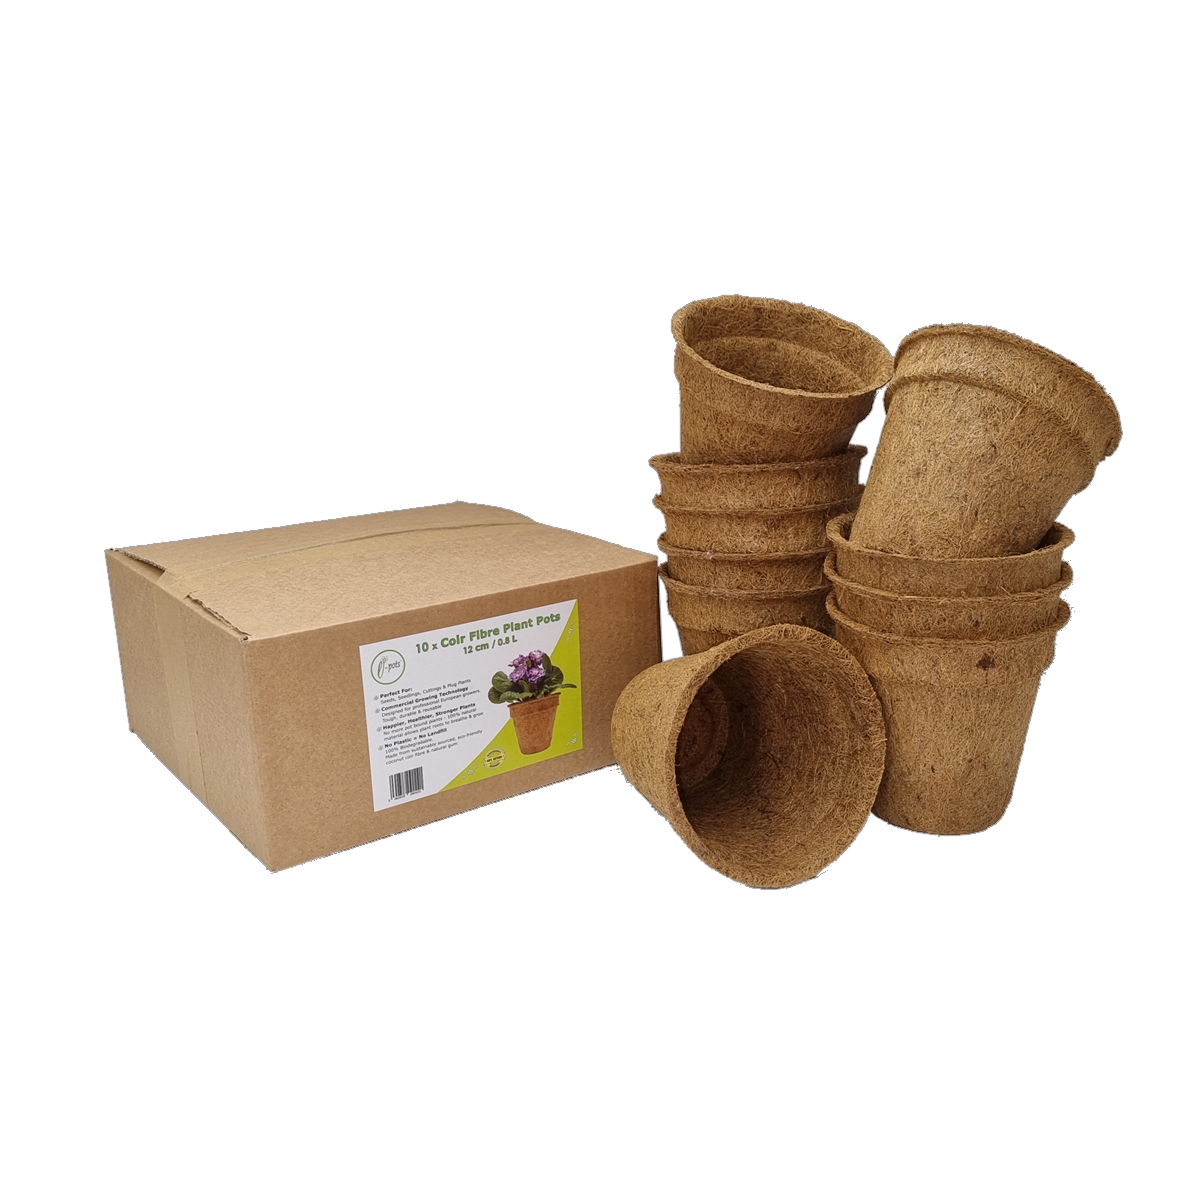 12cm Coir Pots with box